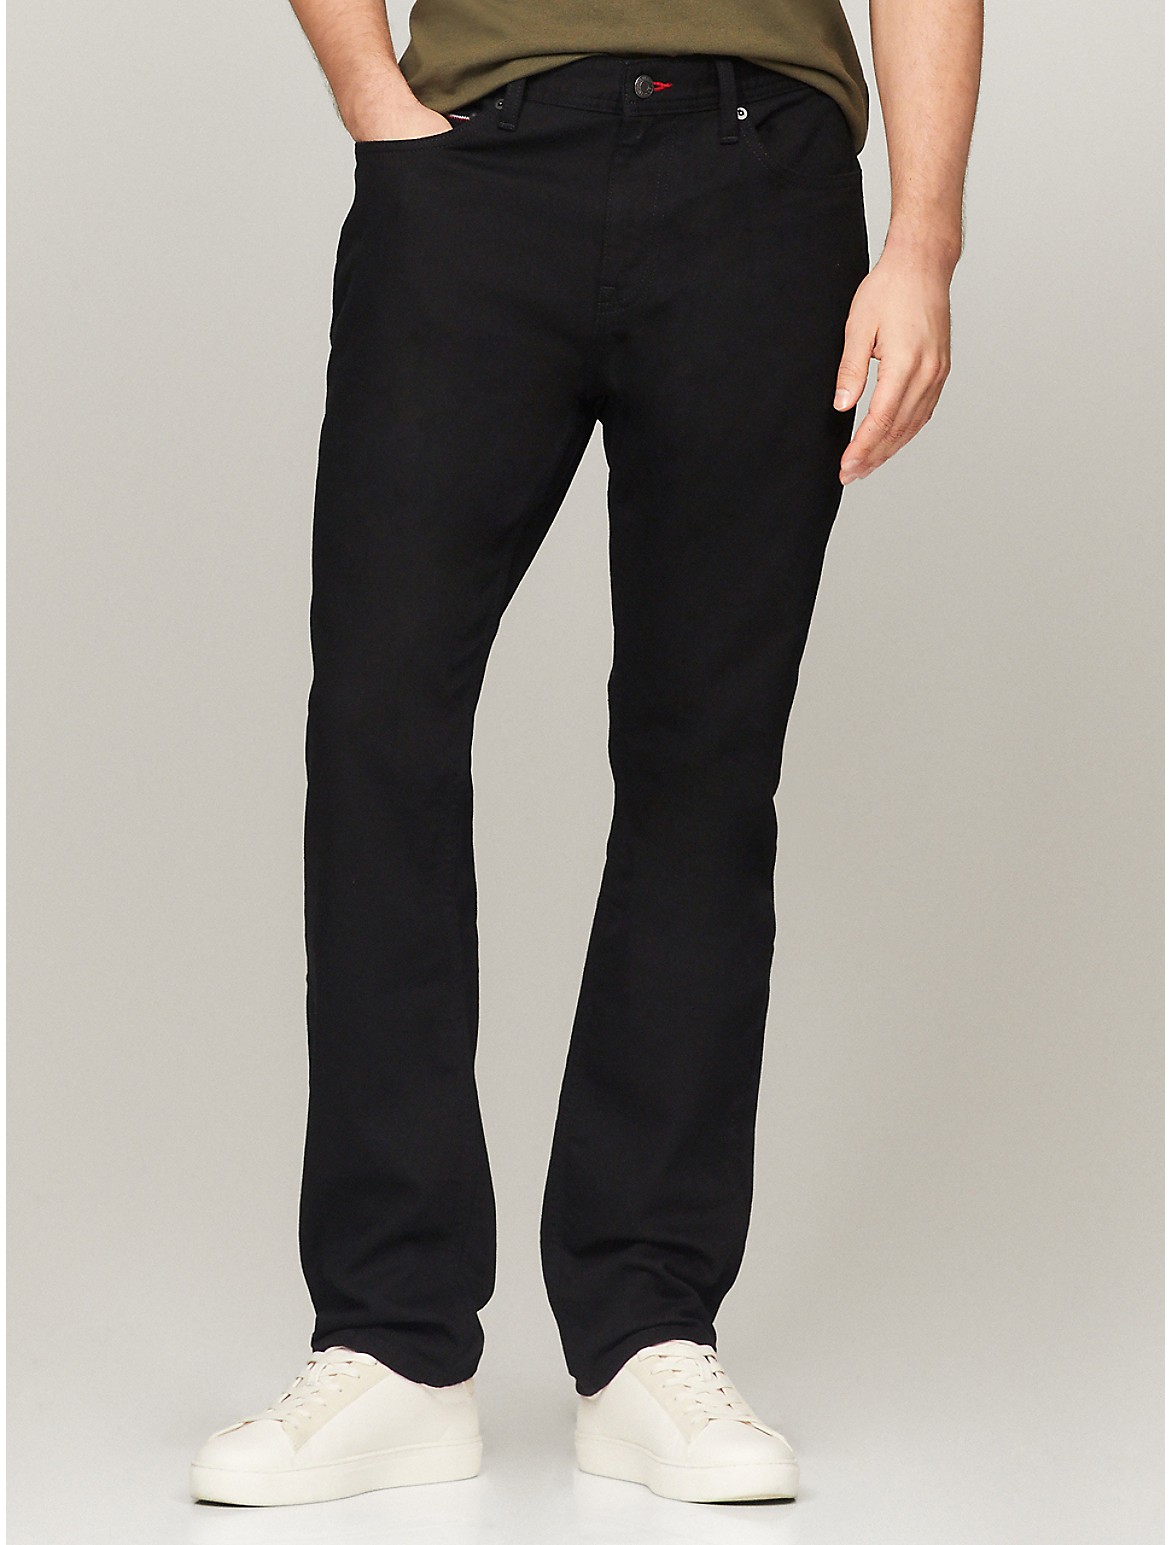 Tommy Hilfiger Men's Straight Fit Black Jean - Black - 31W x 32L